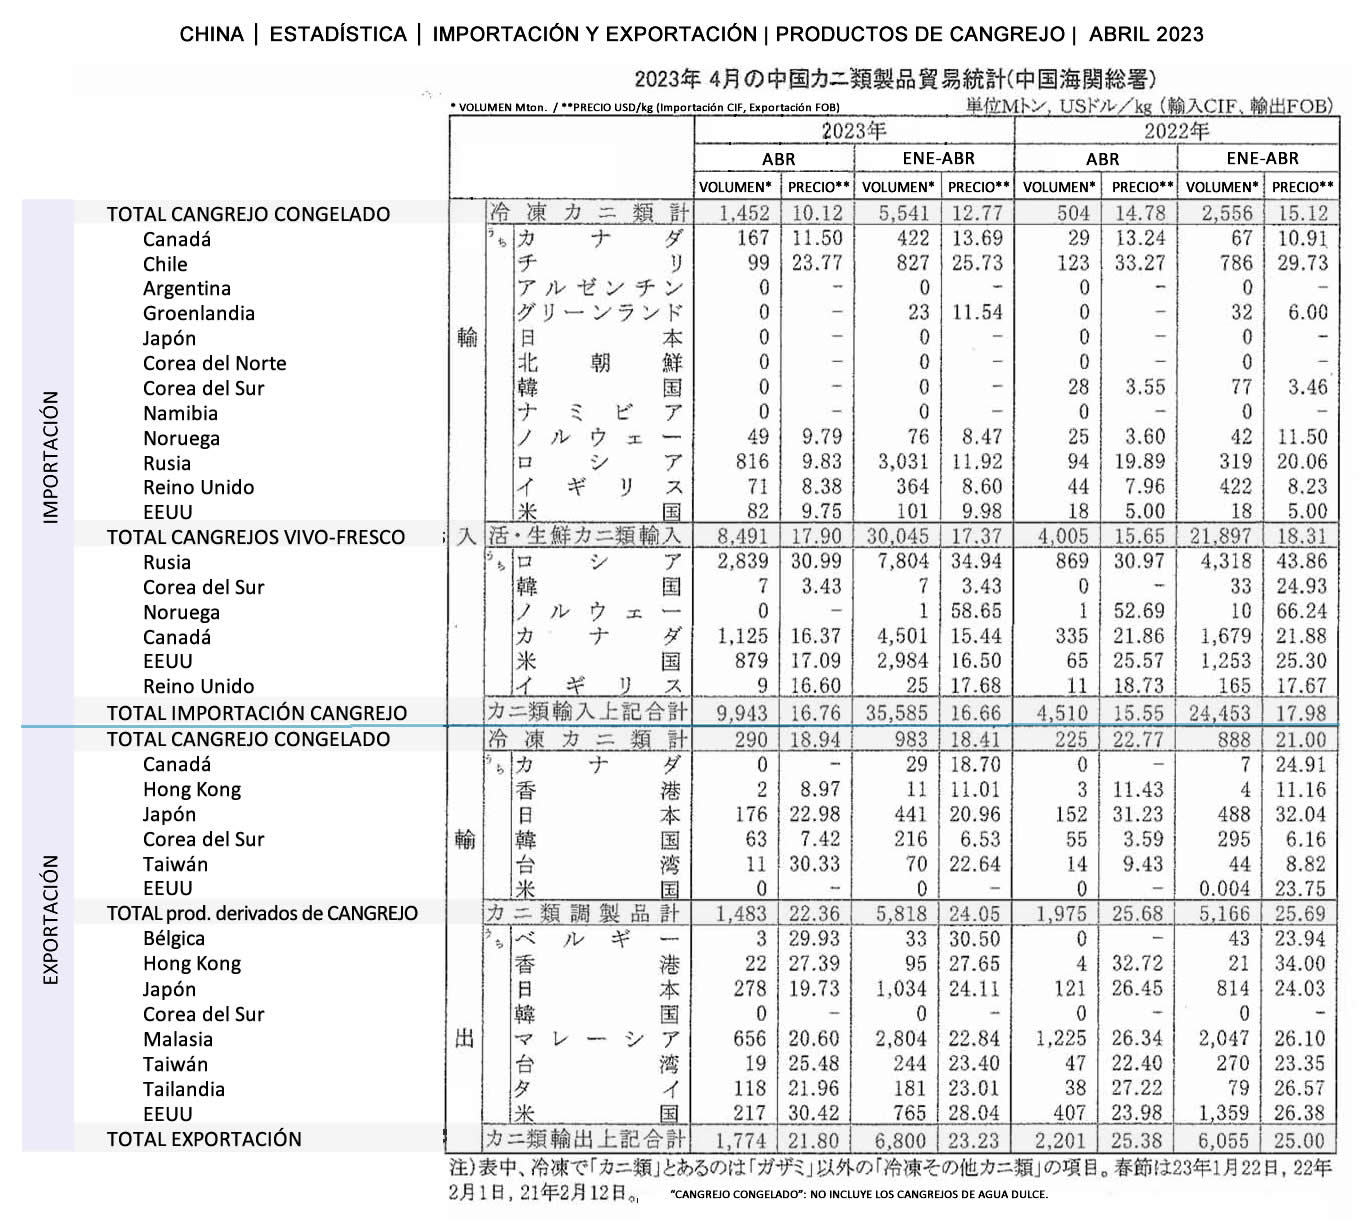 esp-China-Estadistica de importacion y exportacion de productos de cangrejo FIS seafood_media.jpg